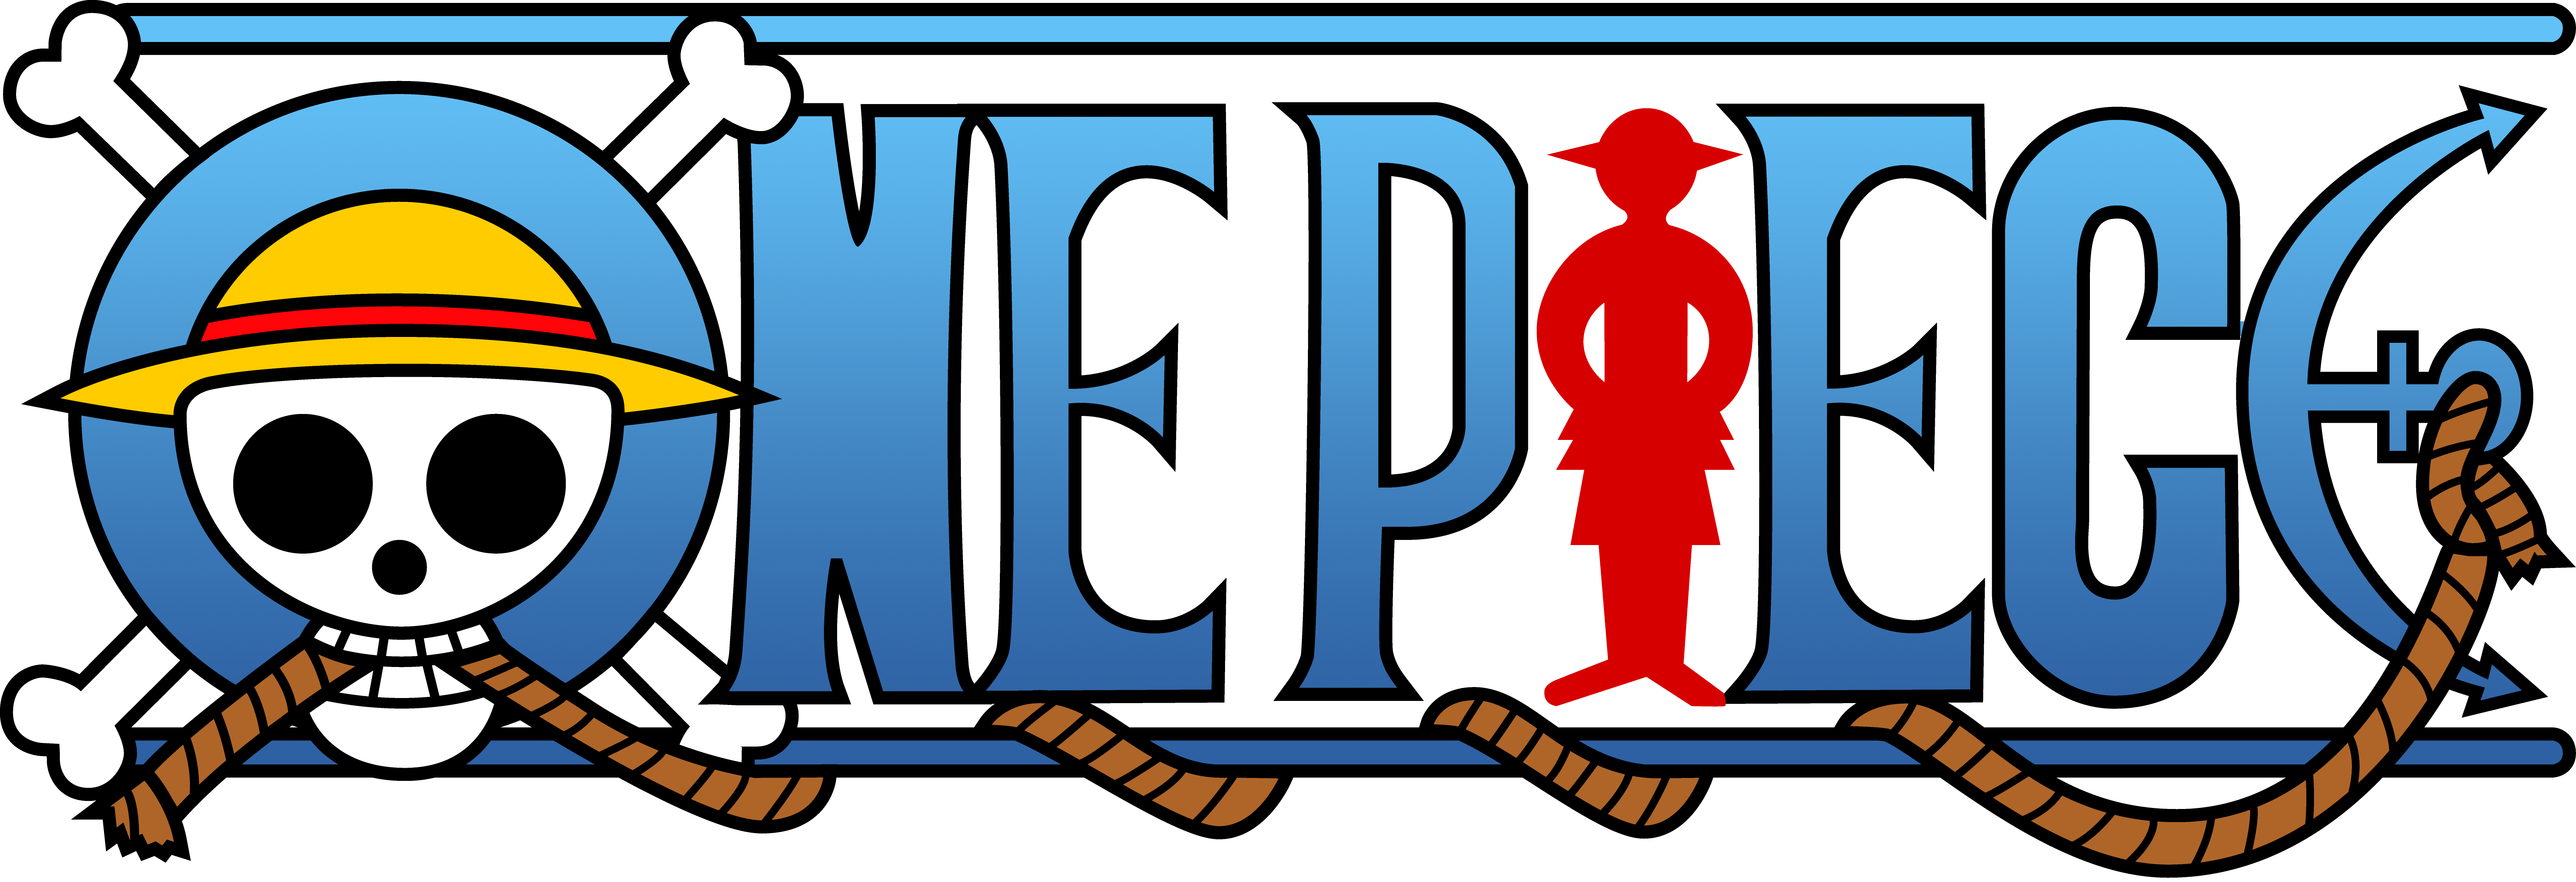 Obraz - One-Piece-Logo-Wallpapers-HD.png – Pora na Przygod?! Wiki